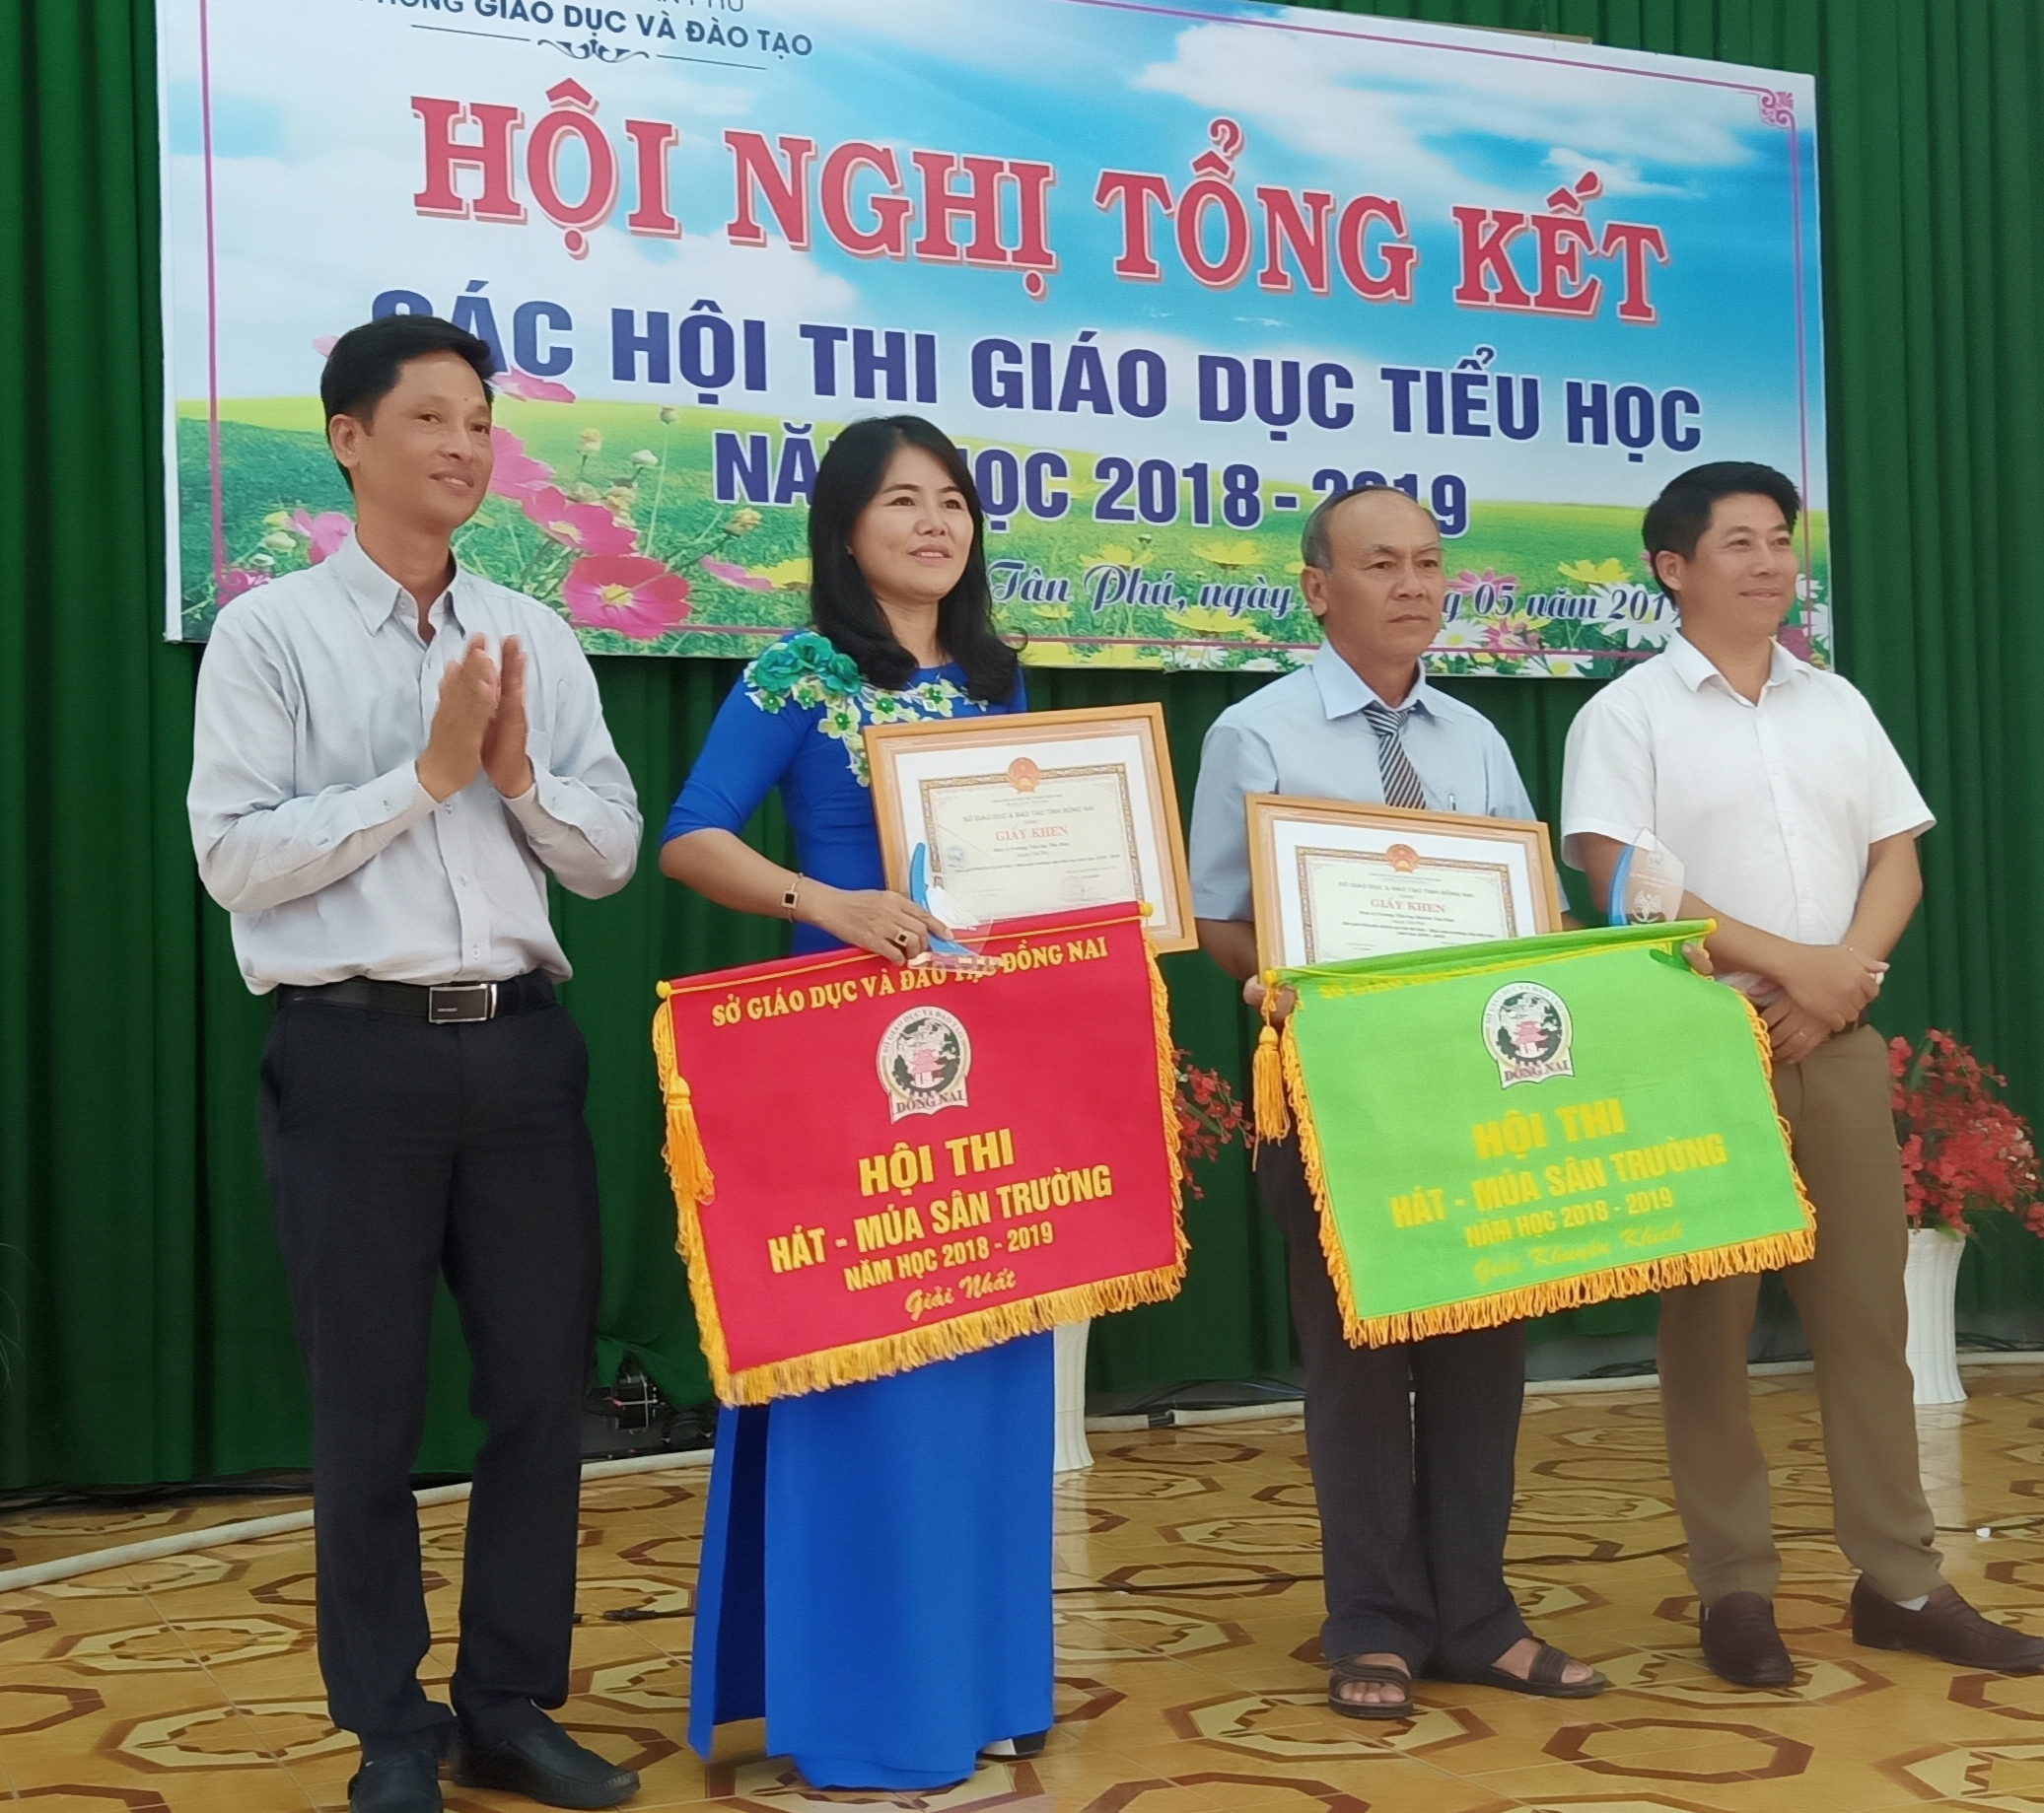 Phòng GDĐT huyện Tân Phú tổ chức tổng kết các hội thi giáo dục tiểu học năm học 2018-2019